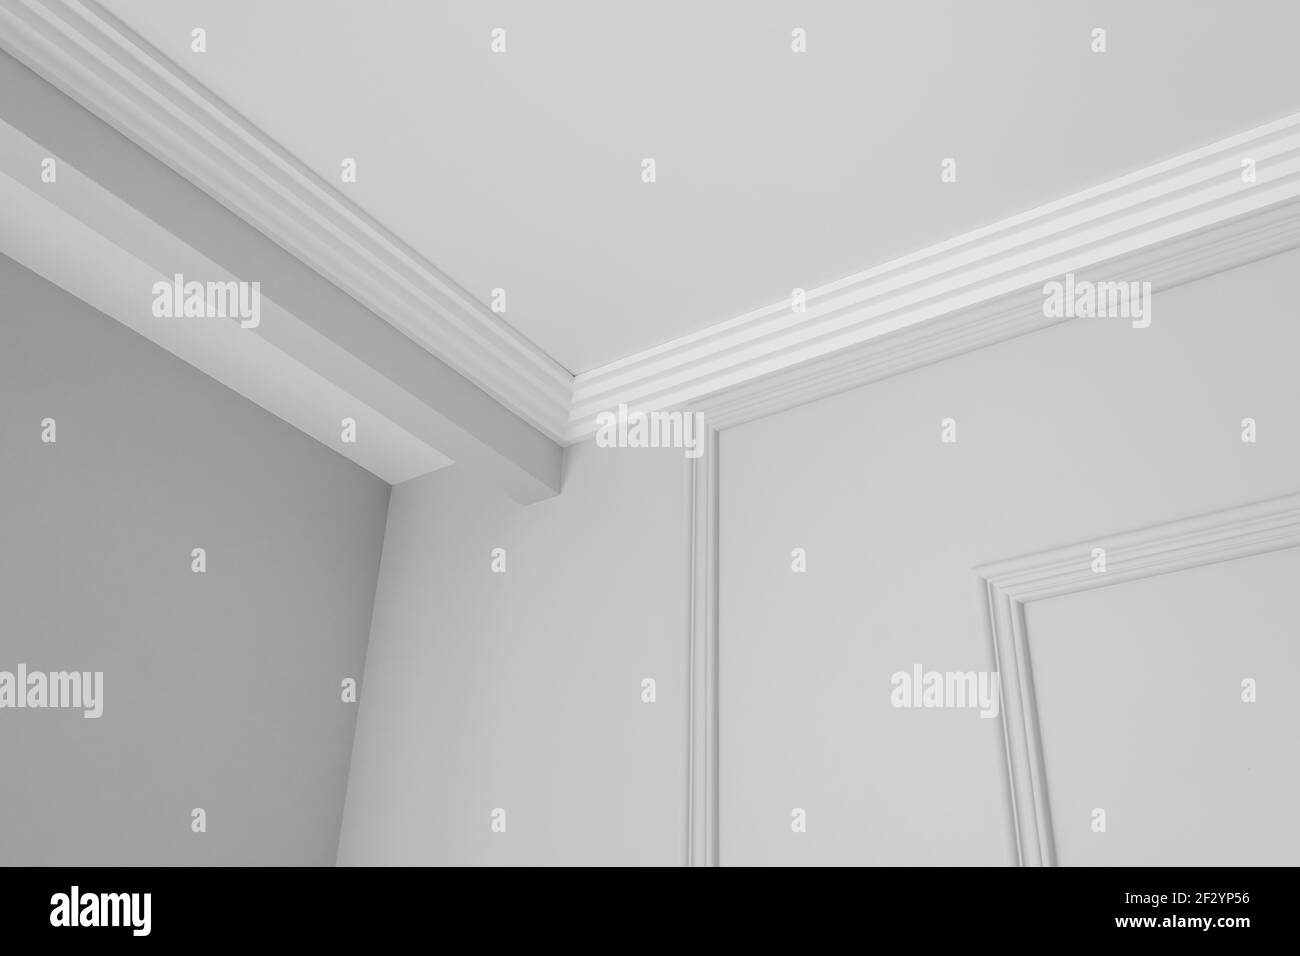 Détail de la corniche de plafond d'angle avec moulures couronnées complexes. Banque D'Images